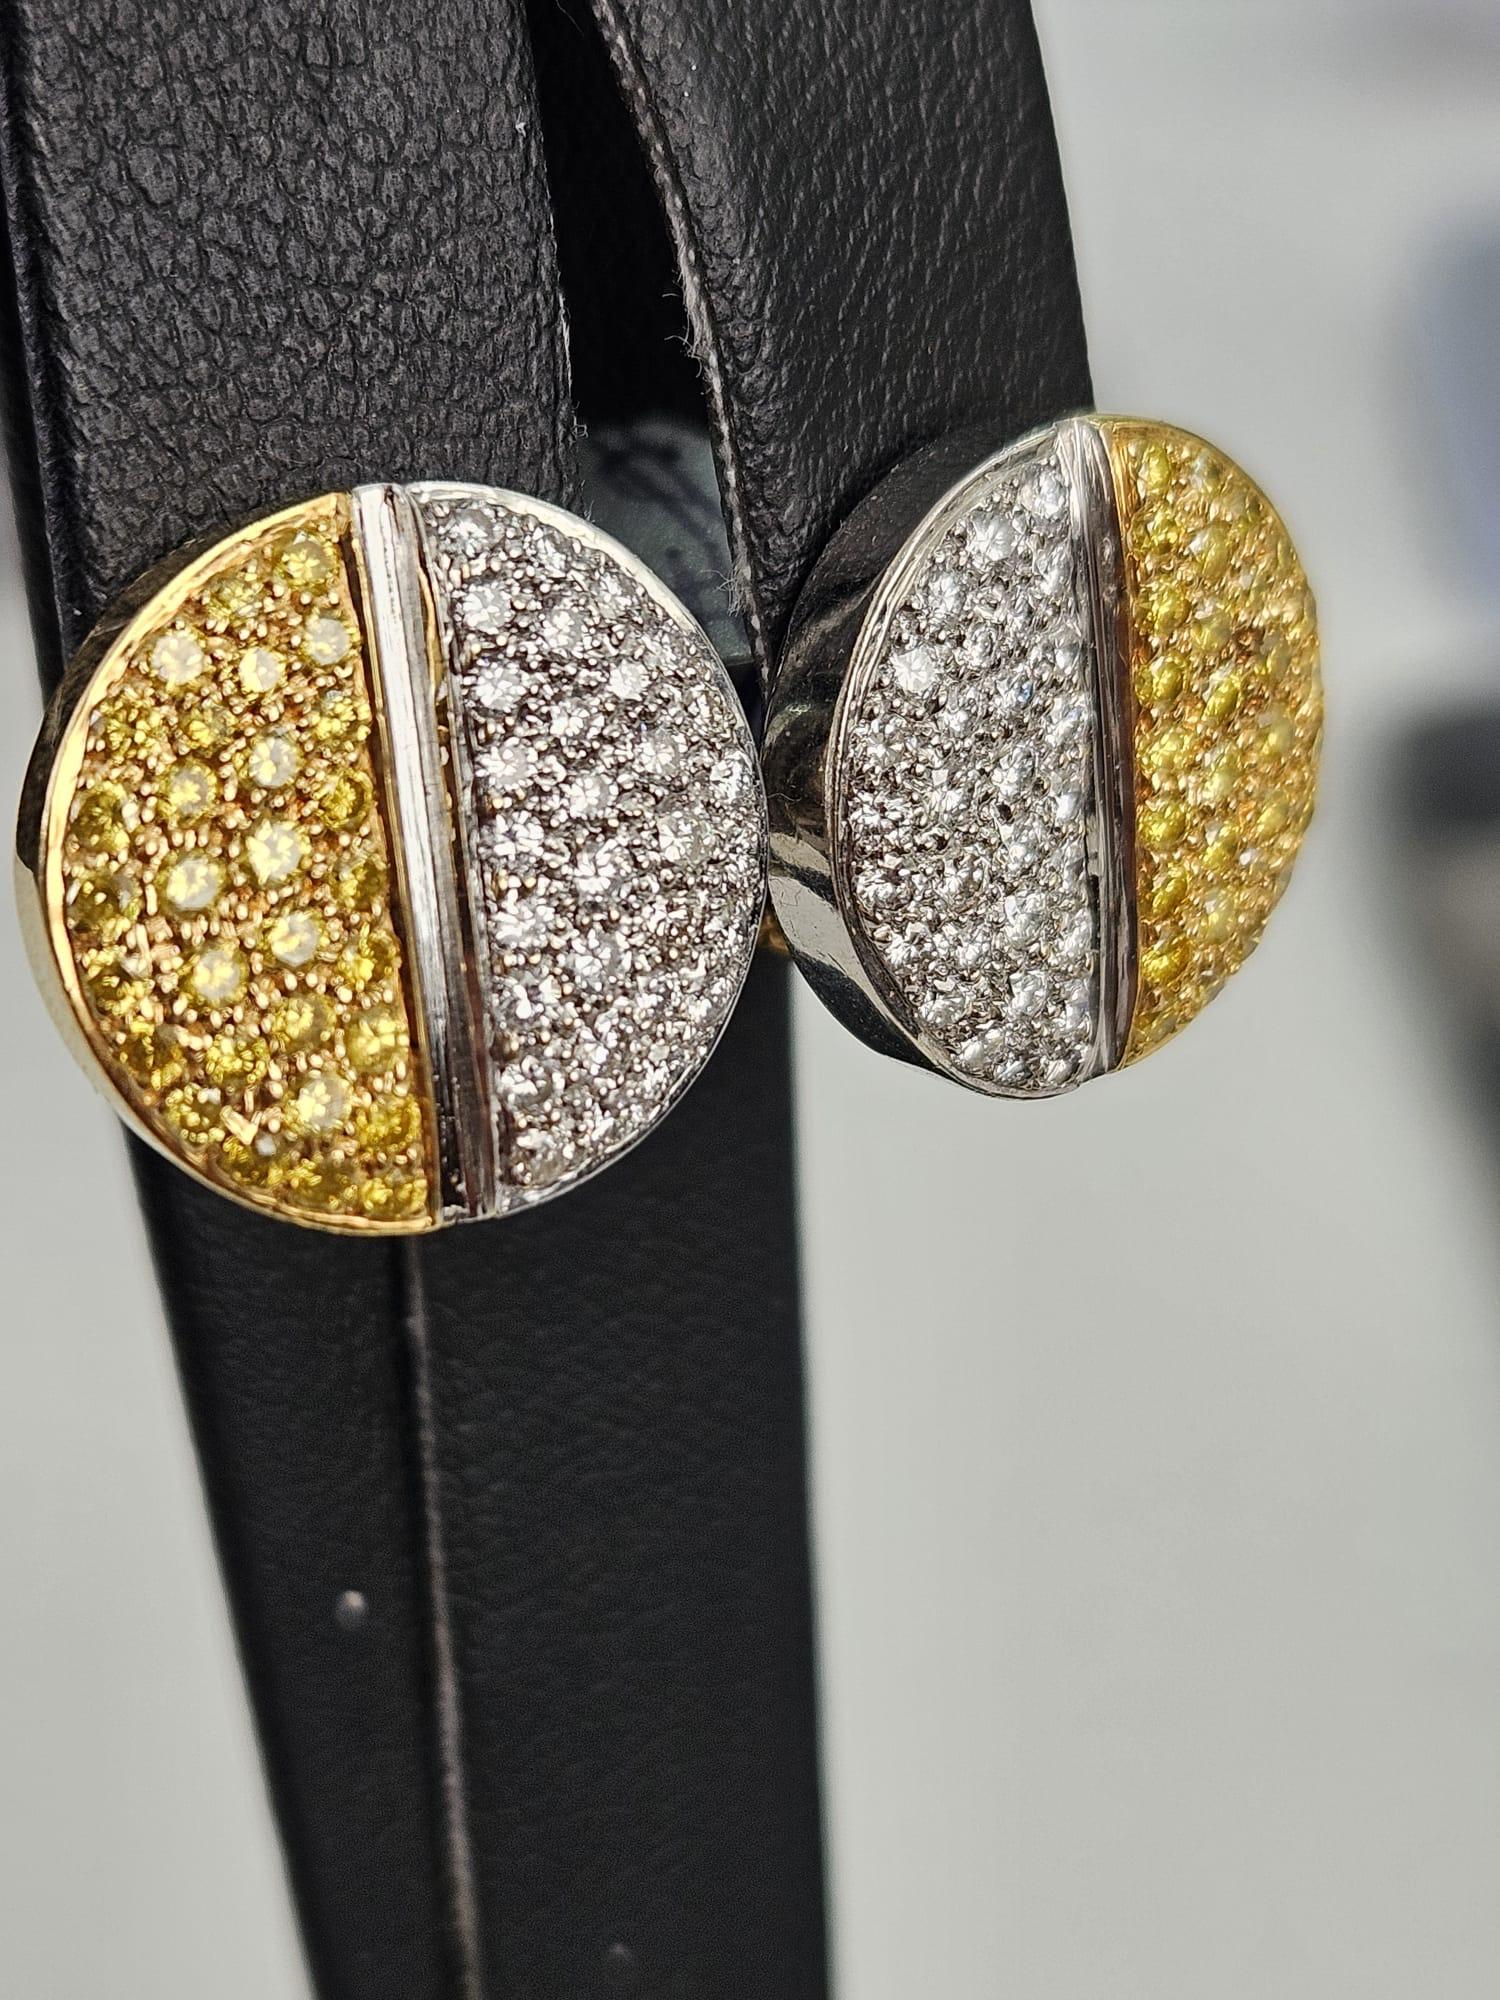 Wir präsentieren ein Paar bezaubernde Ohrringe mit 1,64 Karat kanarischem und weißem Diamanten, bei denen sich die Schönheit kontrastreicher Farbtöne und ein harmonisches Design zu einem fesselnden Kreis vereinen. Die runde Form dieser Ohrringe ist